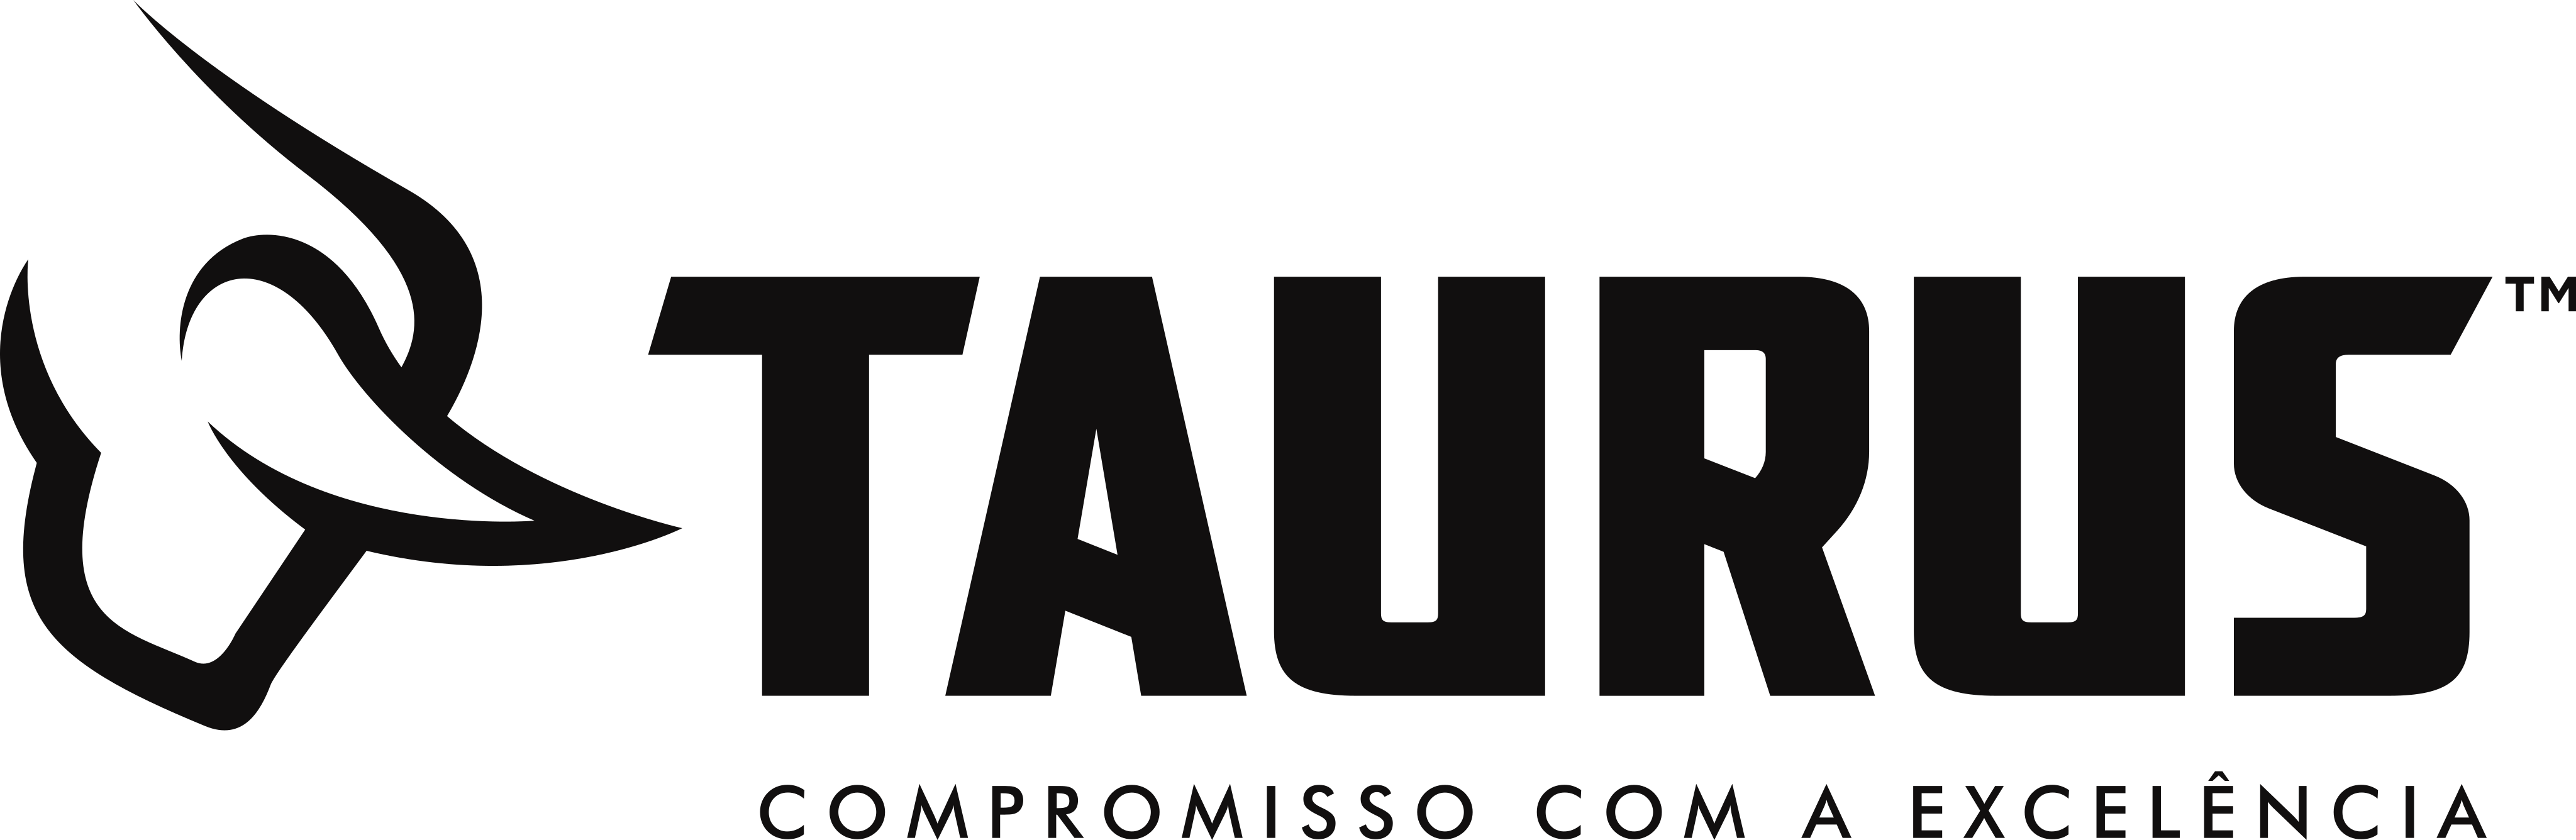 Taurus Armas Logo.